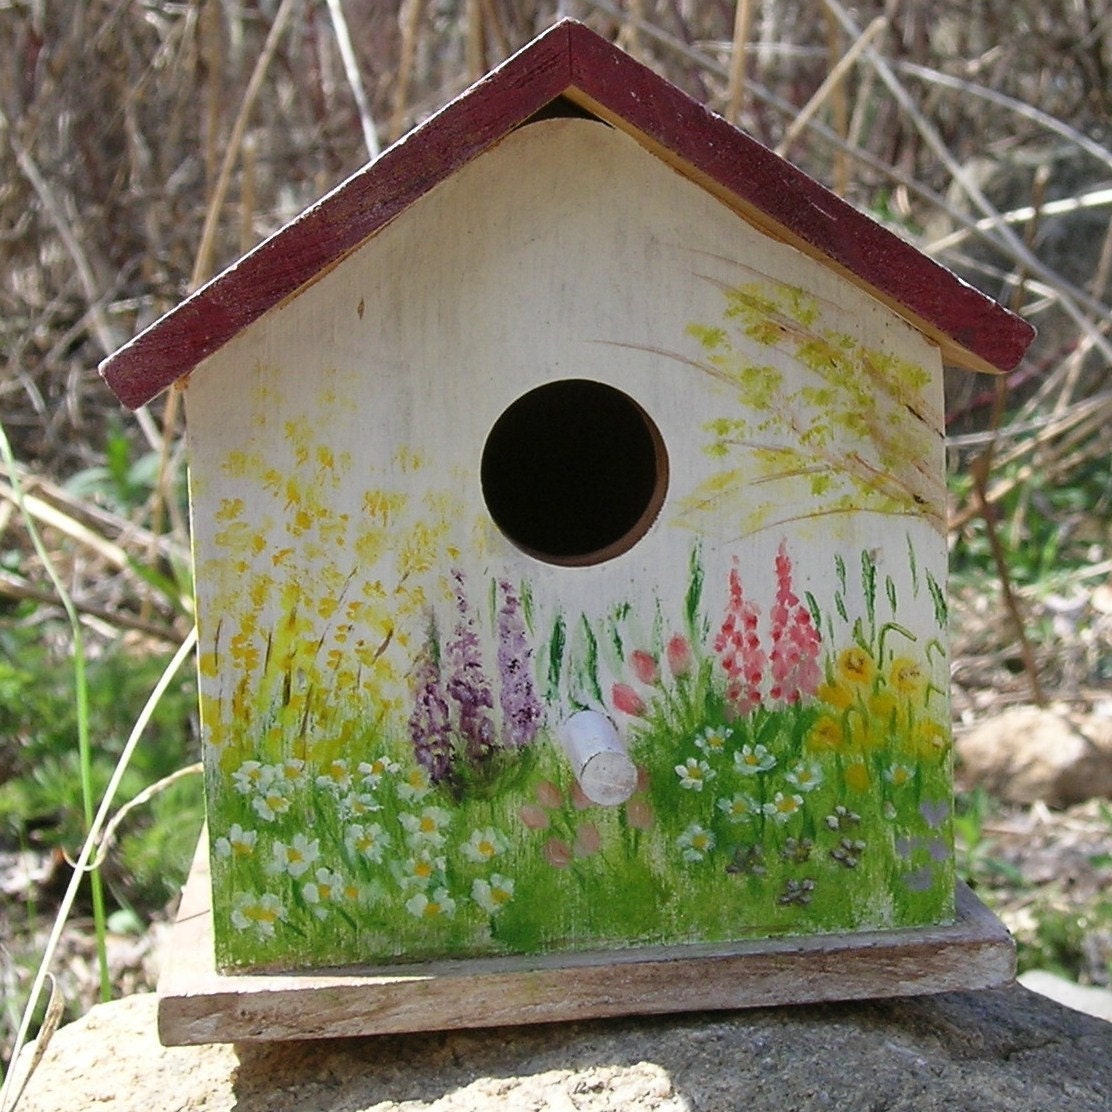 Birds in a Spring Garden - Birdhouse